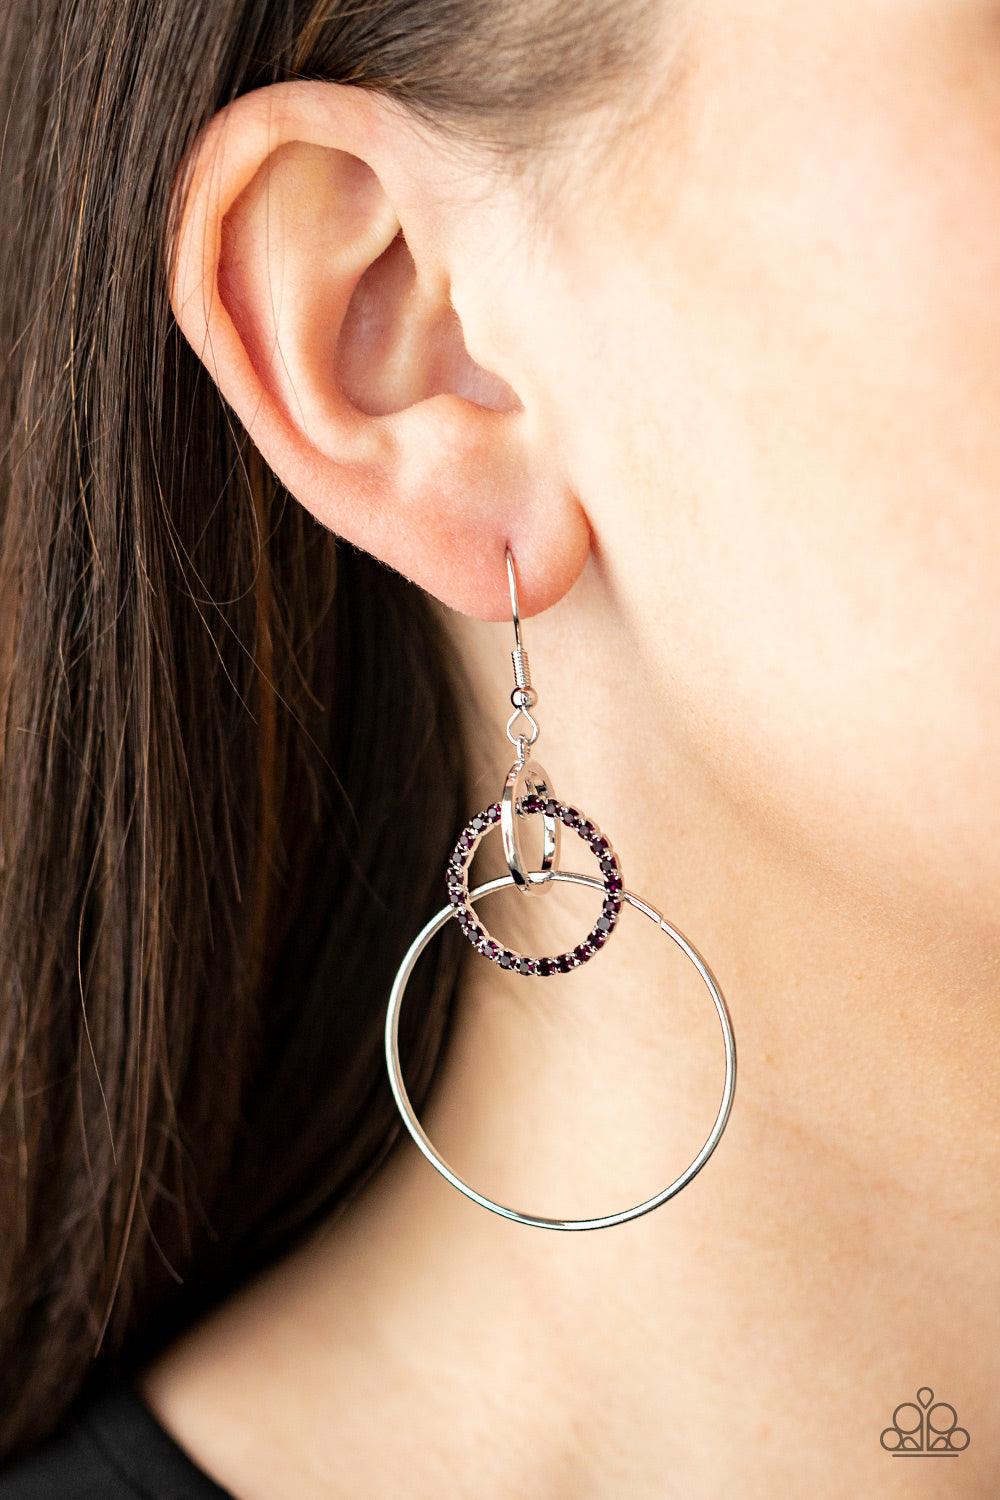 In An Orderly Fashion - Purple Earrings - Jewelry By Bretta